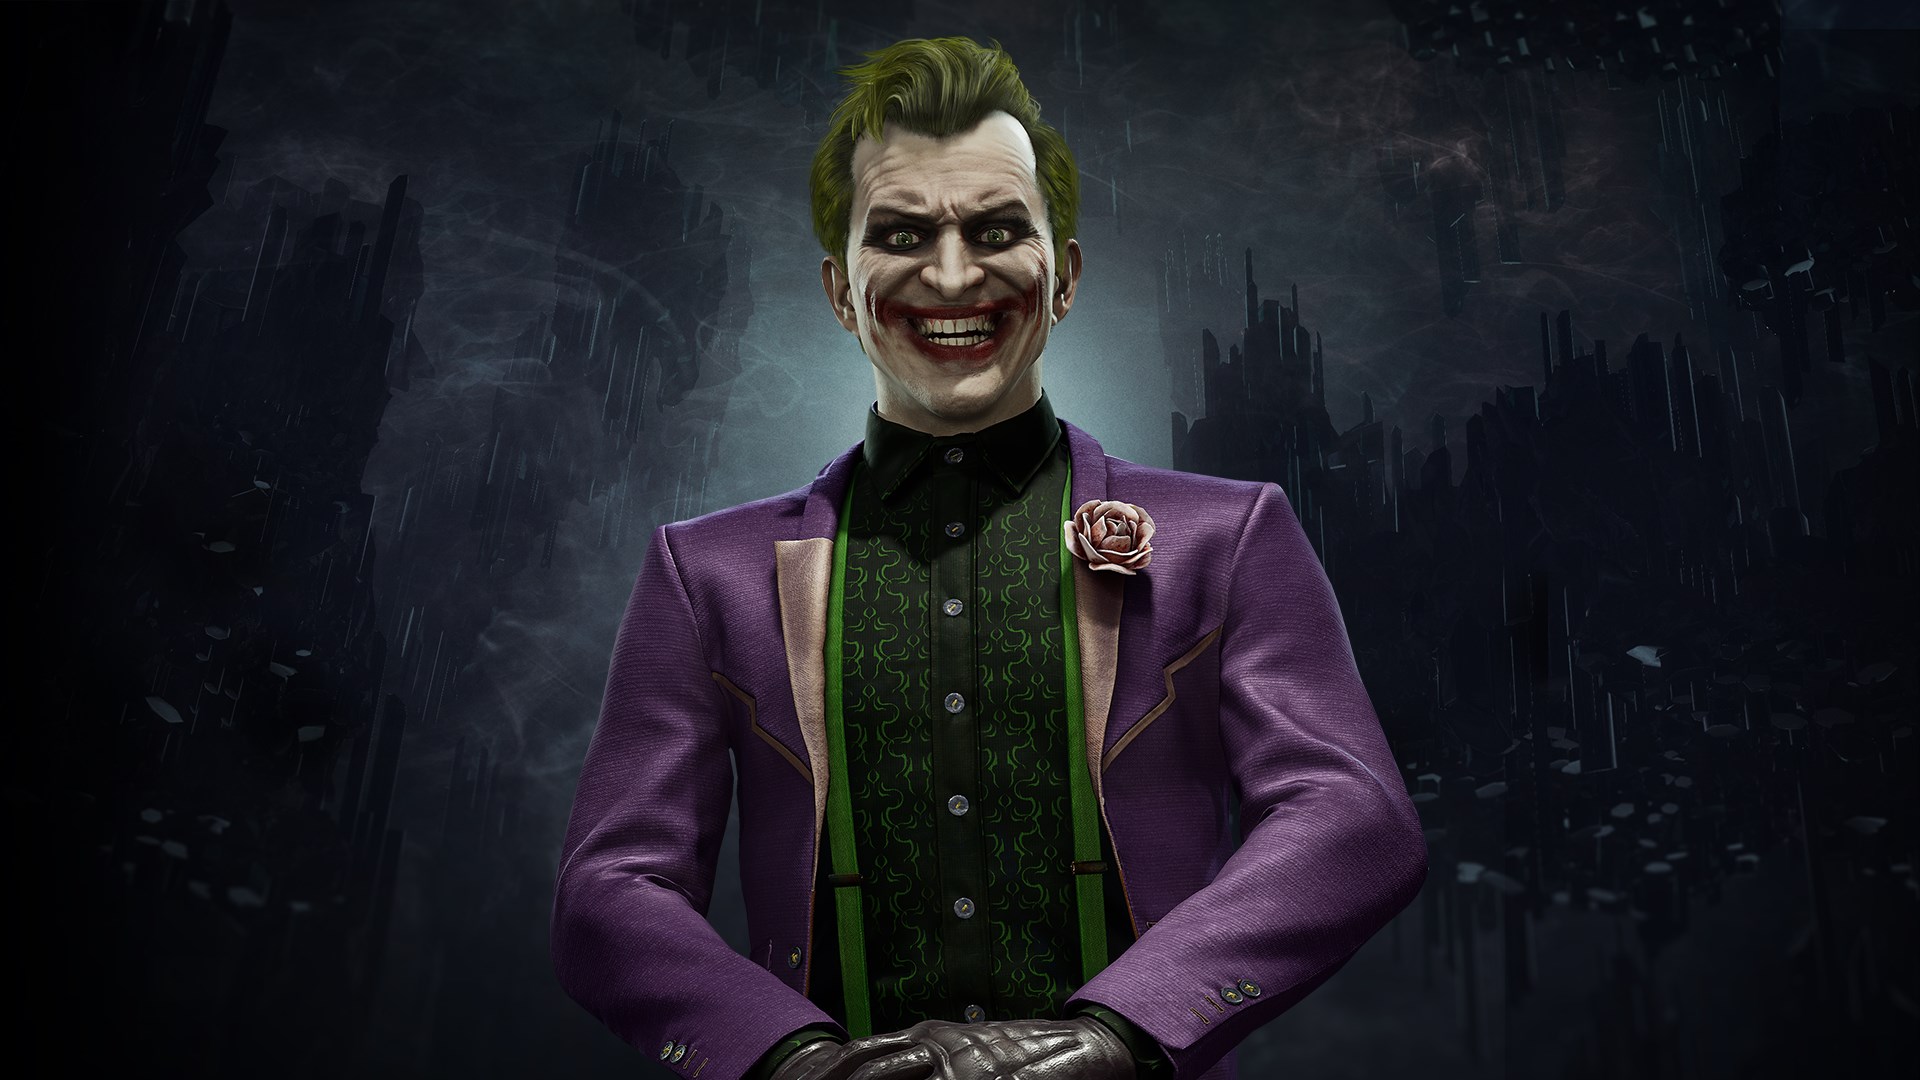 Buy The Joker - Microsoft Store en-ID